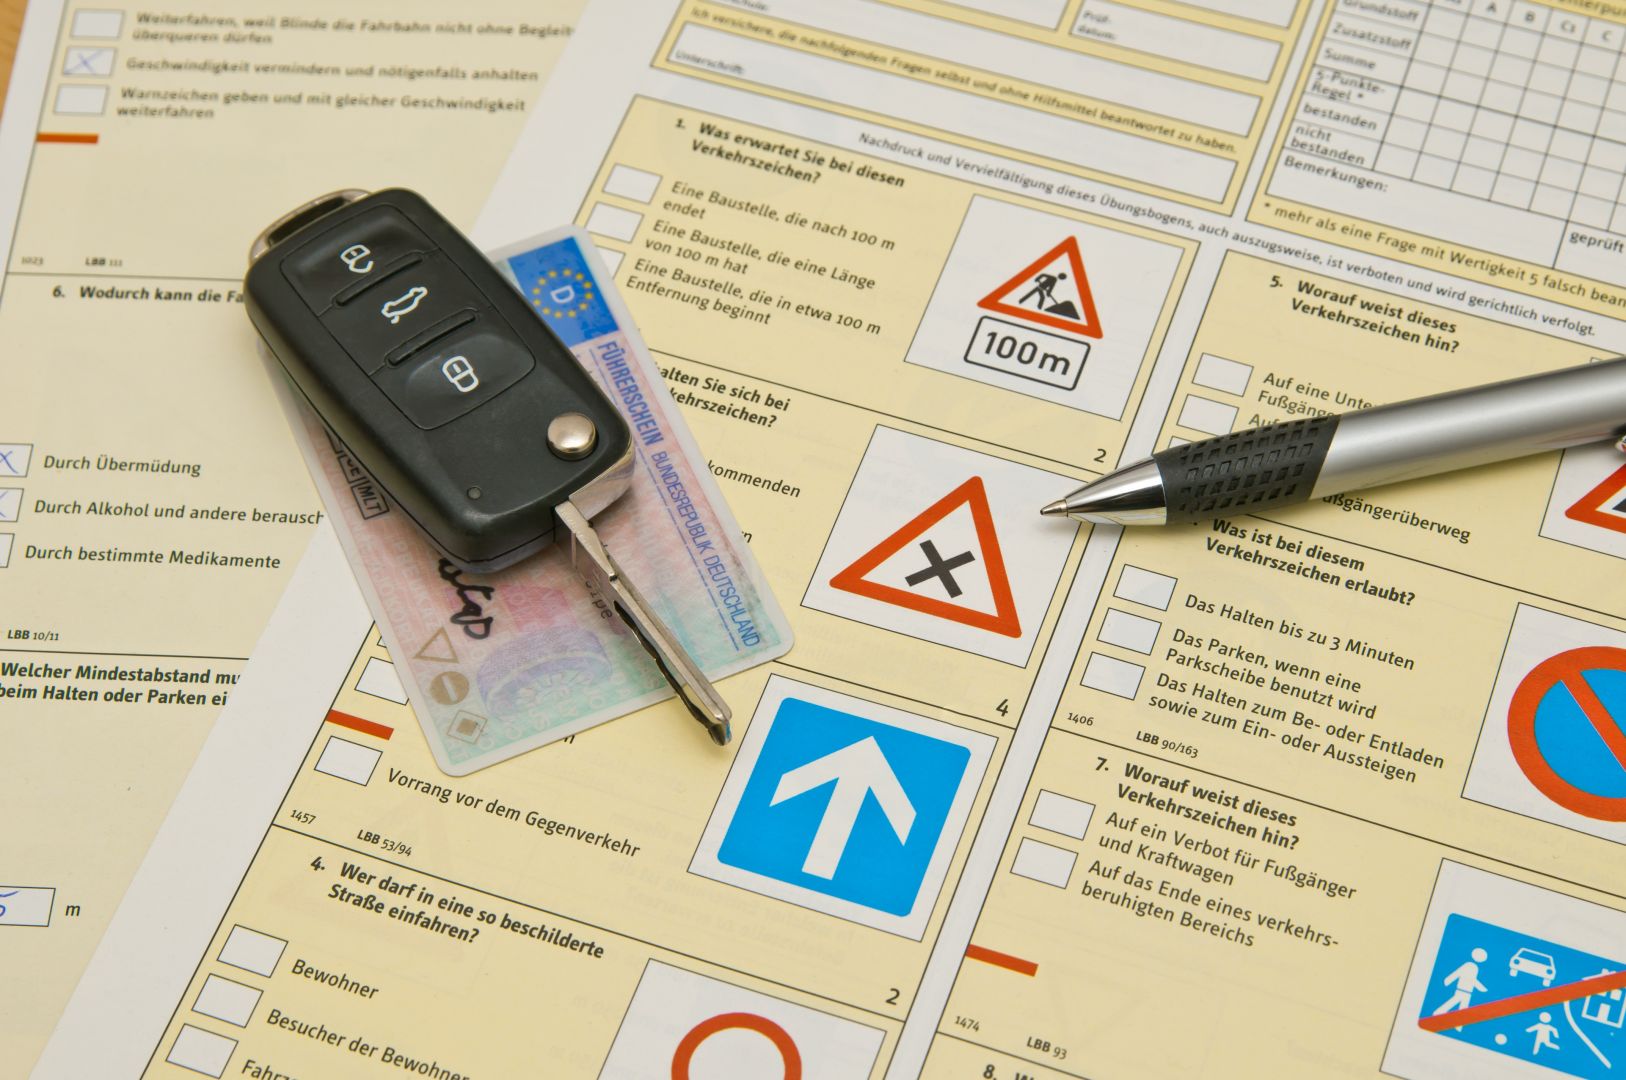 Zakázka na výcvik bezpečné jízdy při krizových situacích (Autoškoly) - Opava